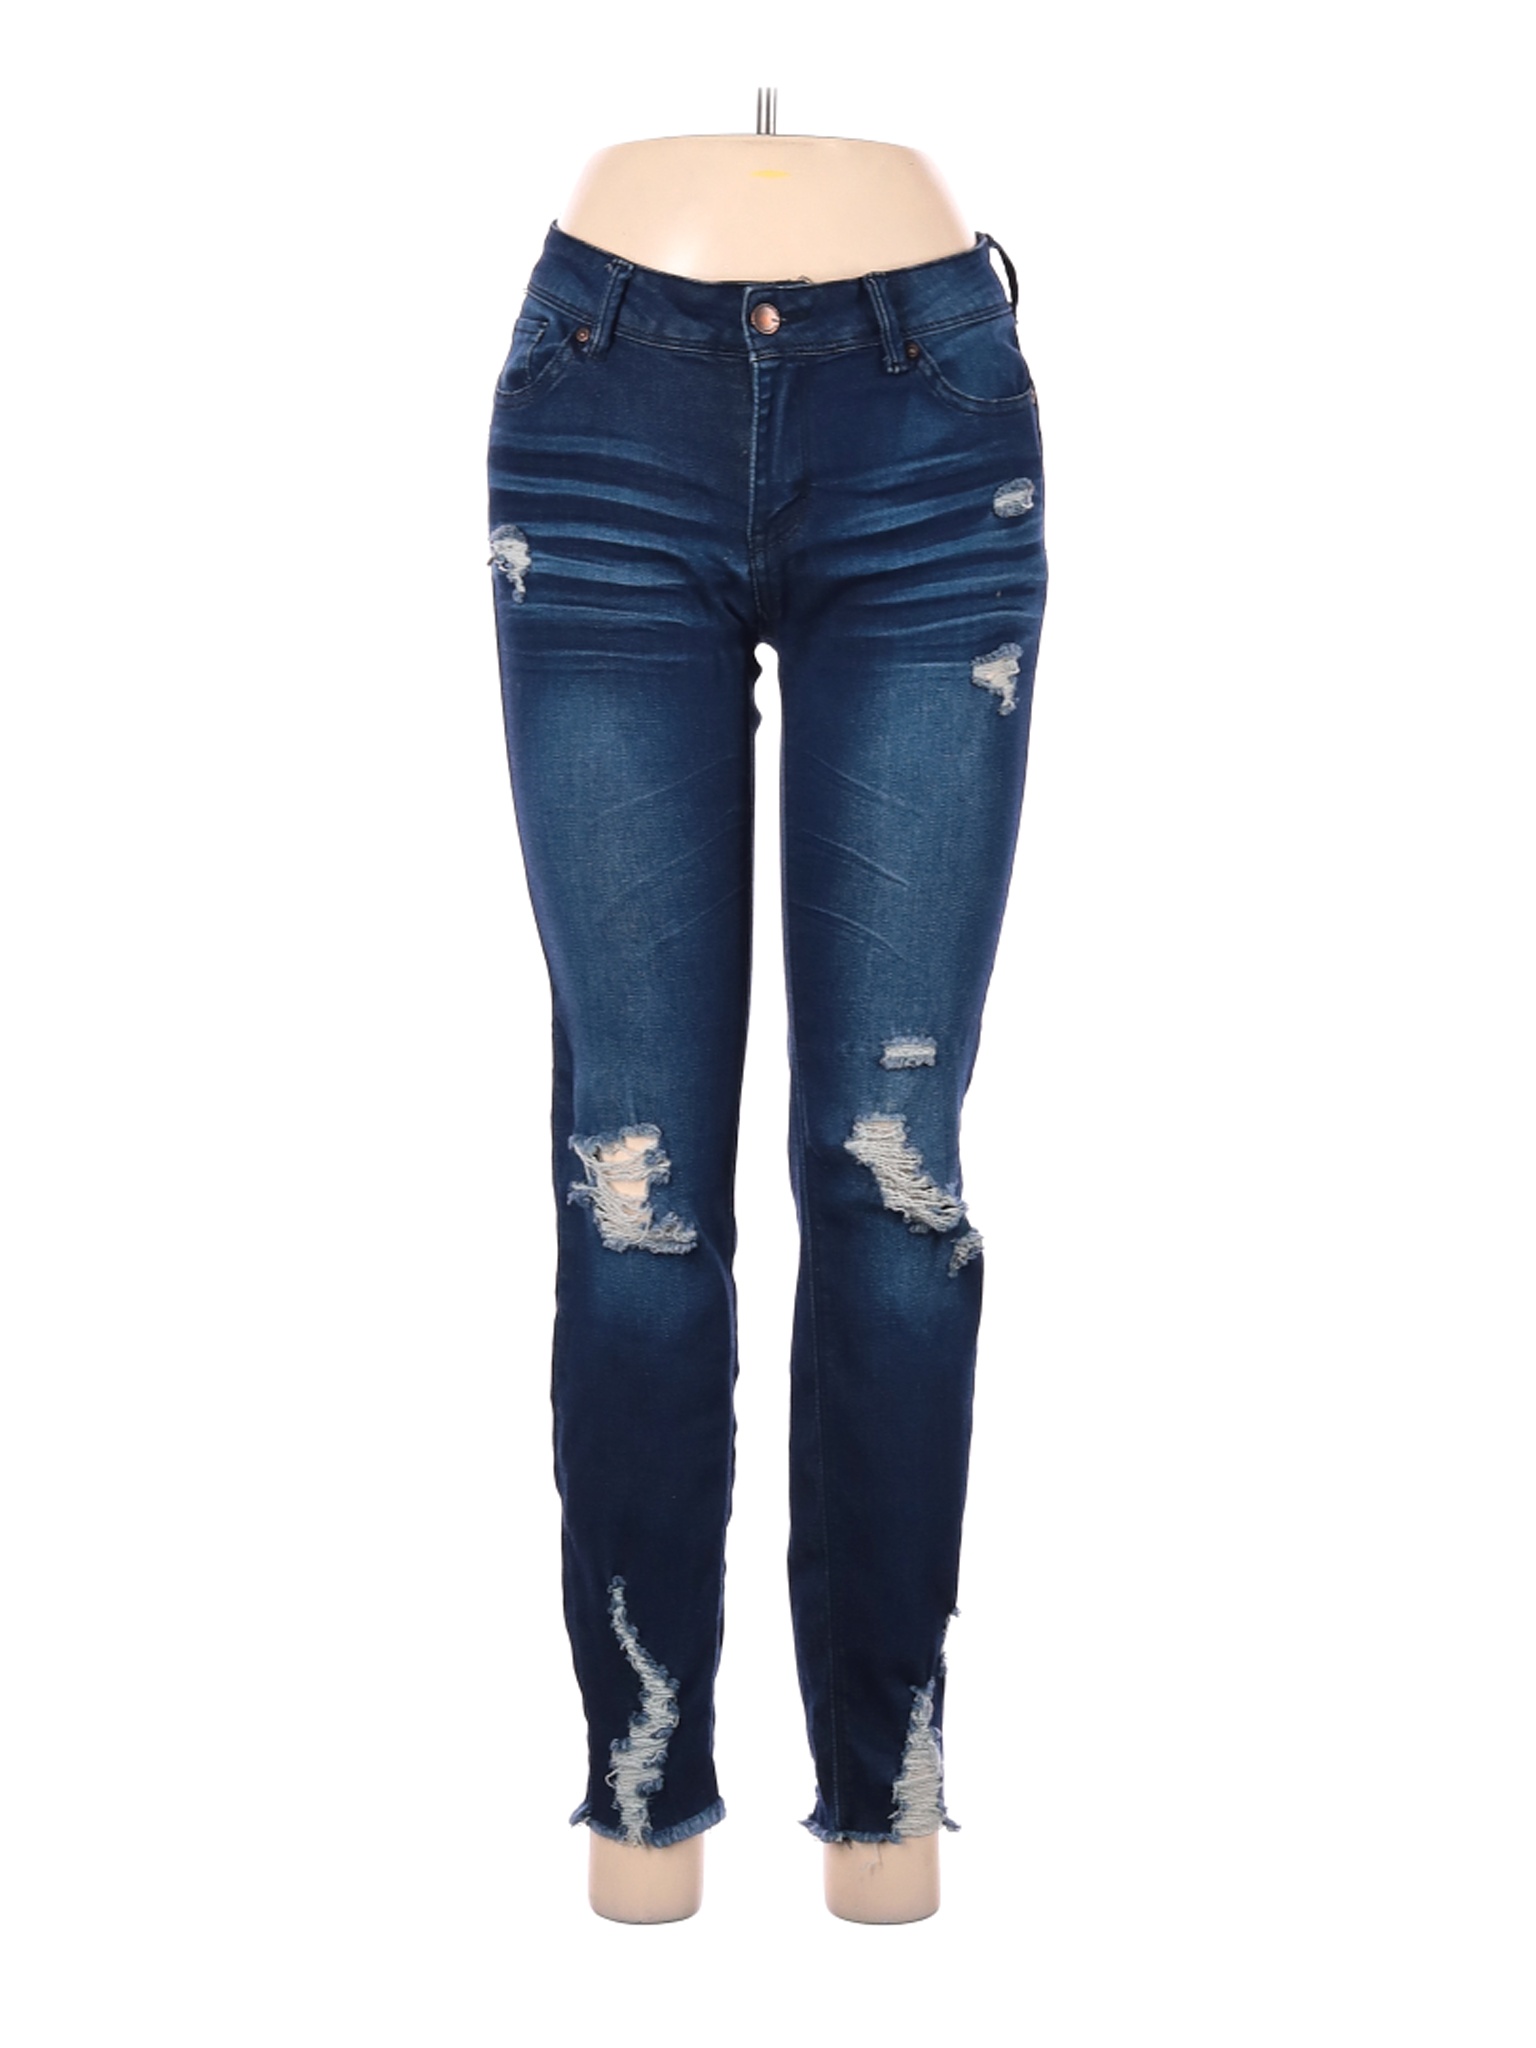 Wax Jean Women Blue Jeans 7 | eBay